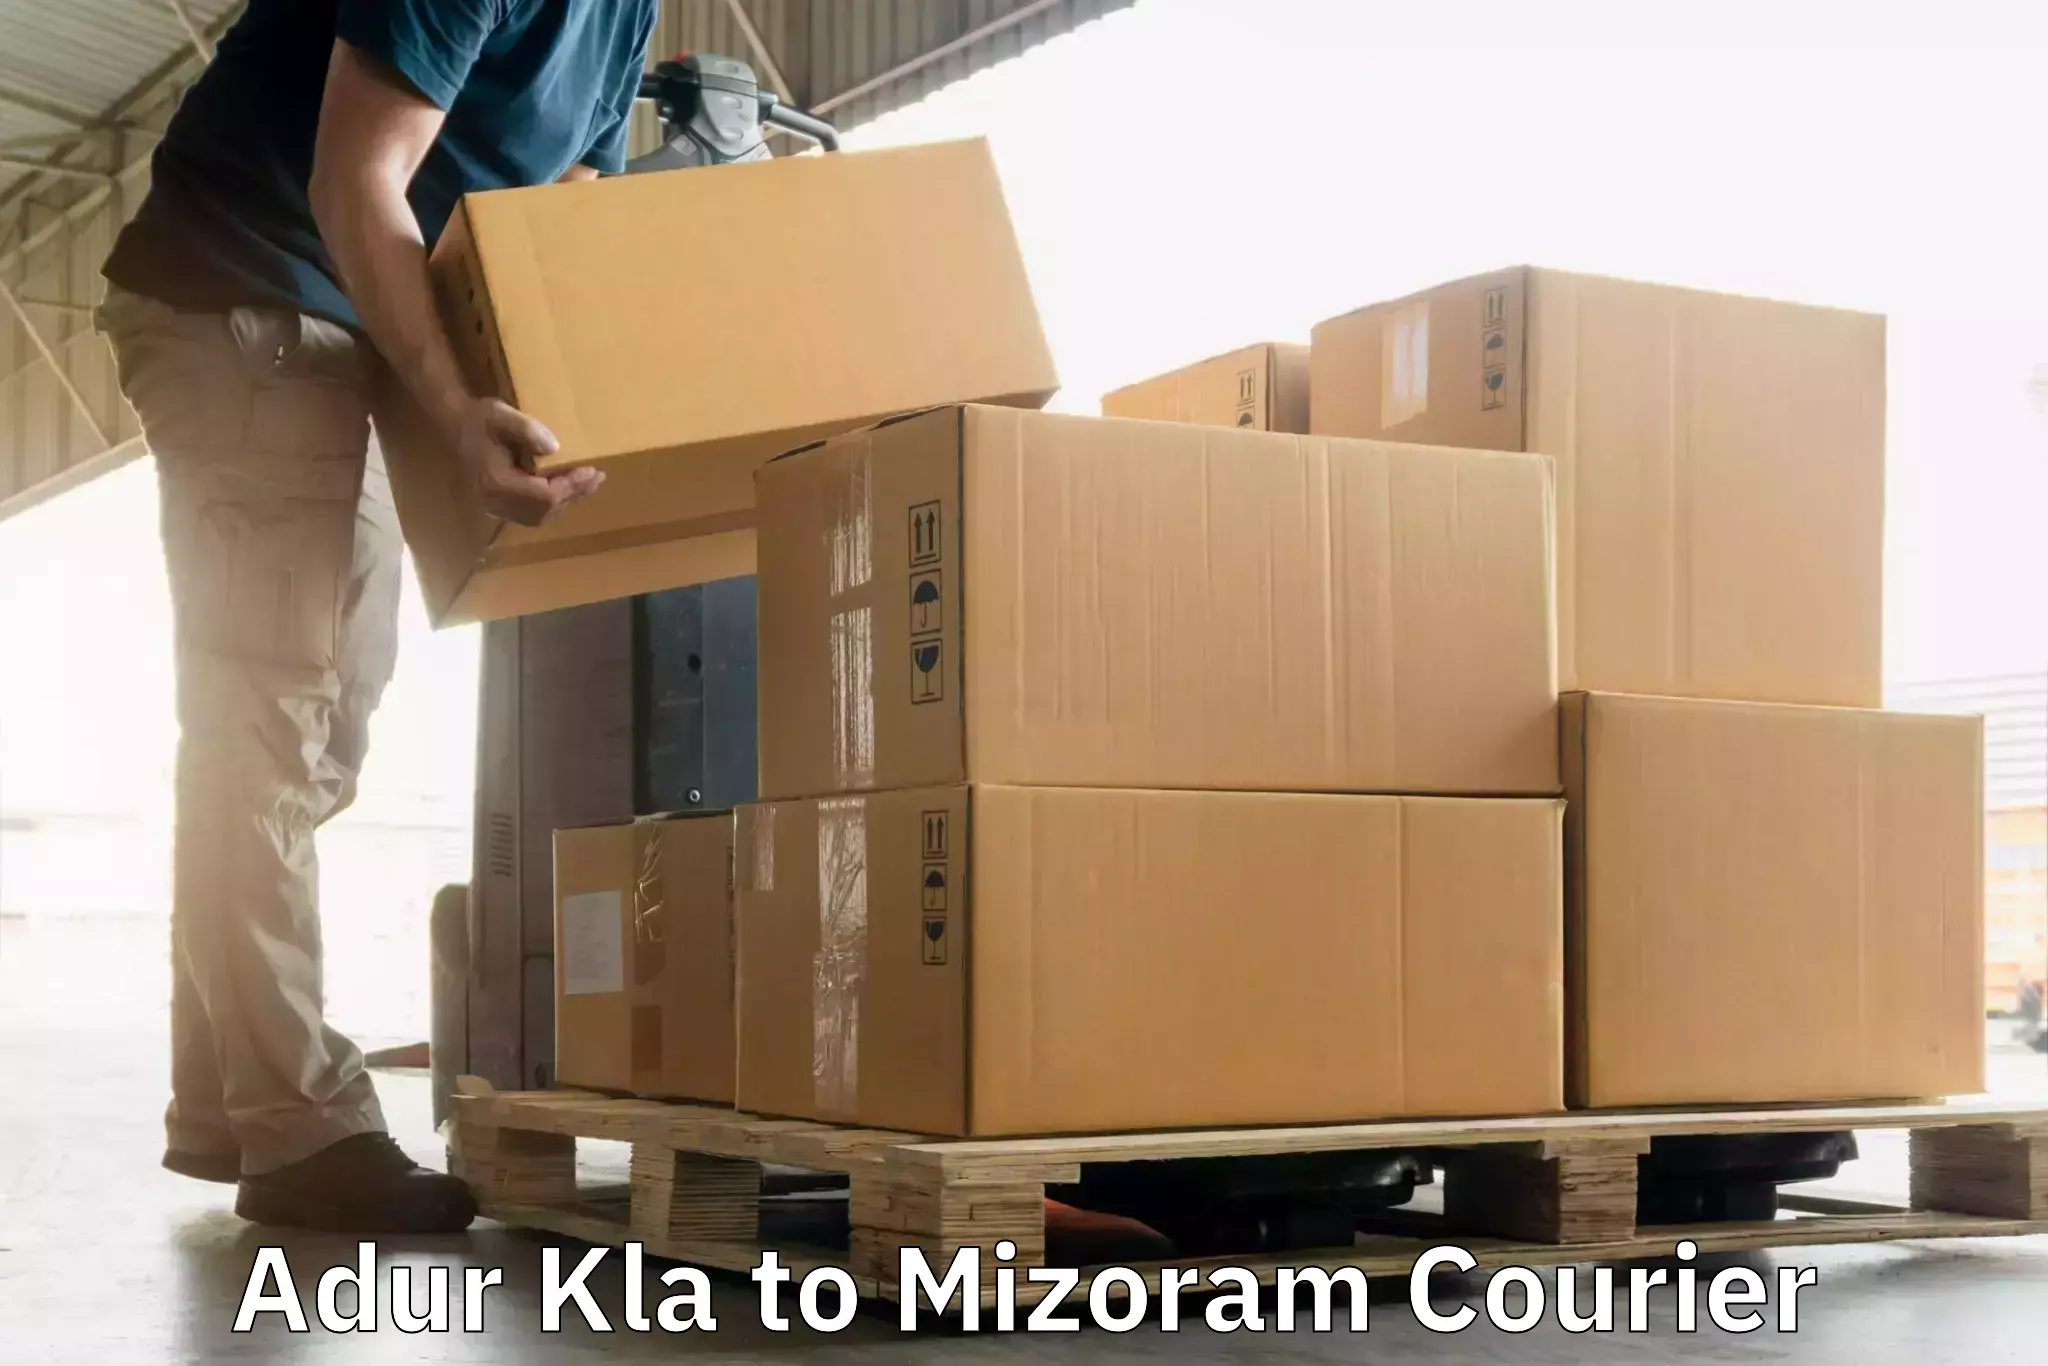 High-priority parcel service Adur Kla to Champhai